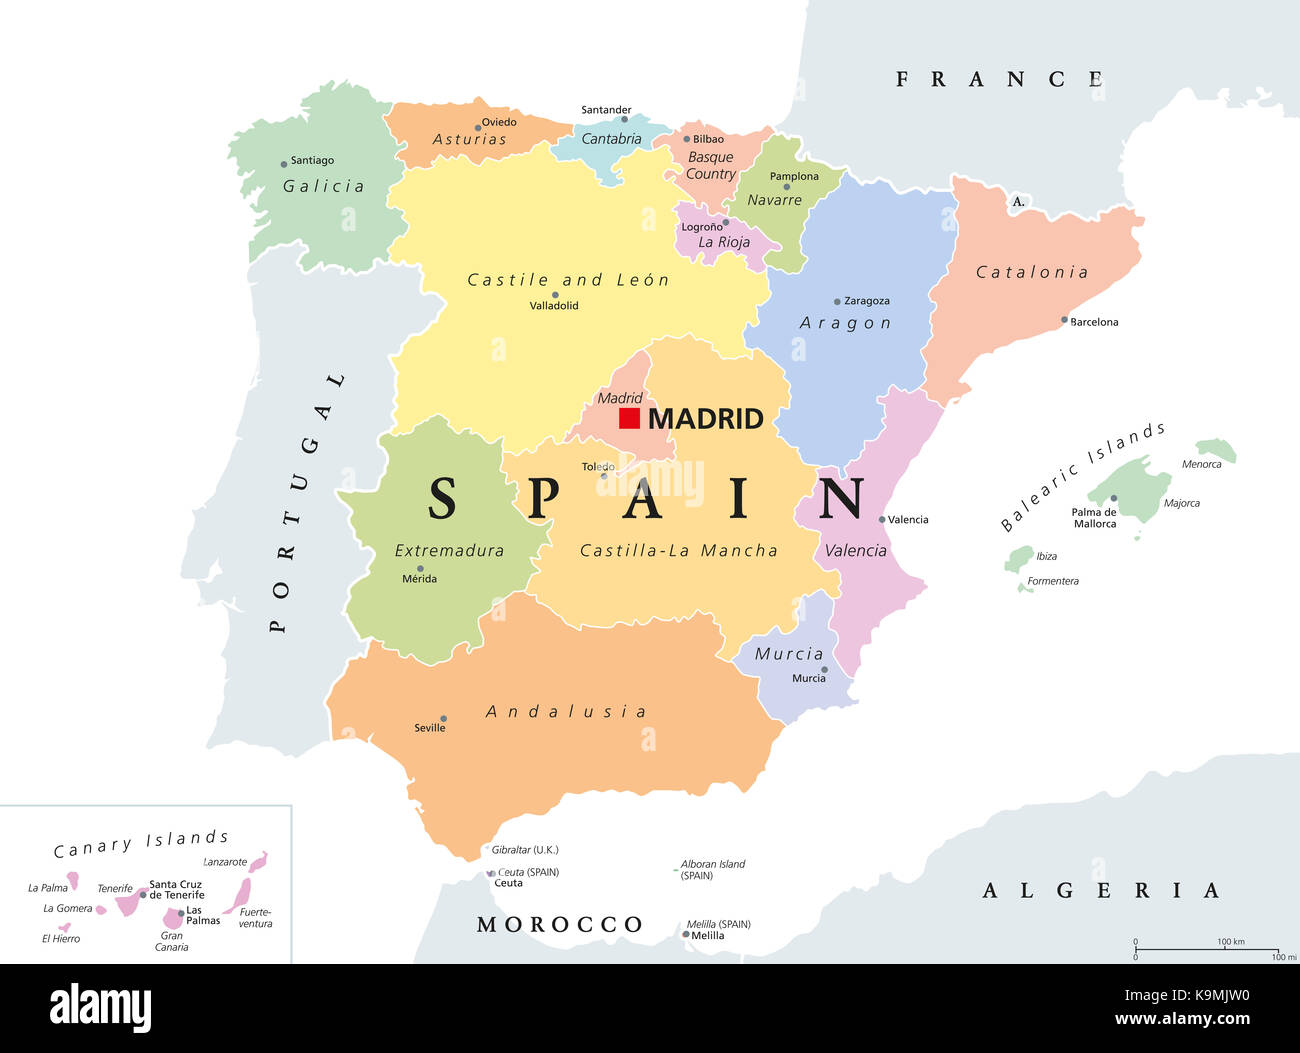 Comunidades autónomas de España mapa político. divisiones administrativas del Reino de España con sus capitales, los municipios y las provincias. Foto de stock